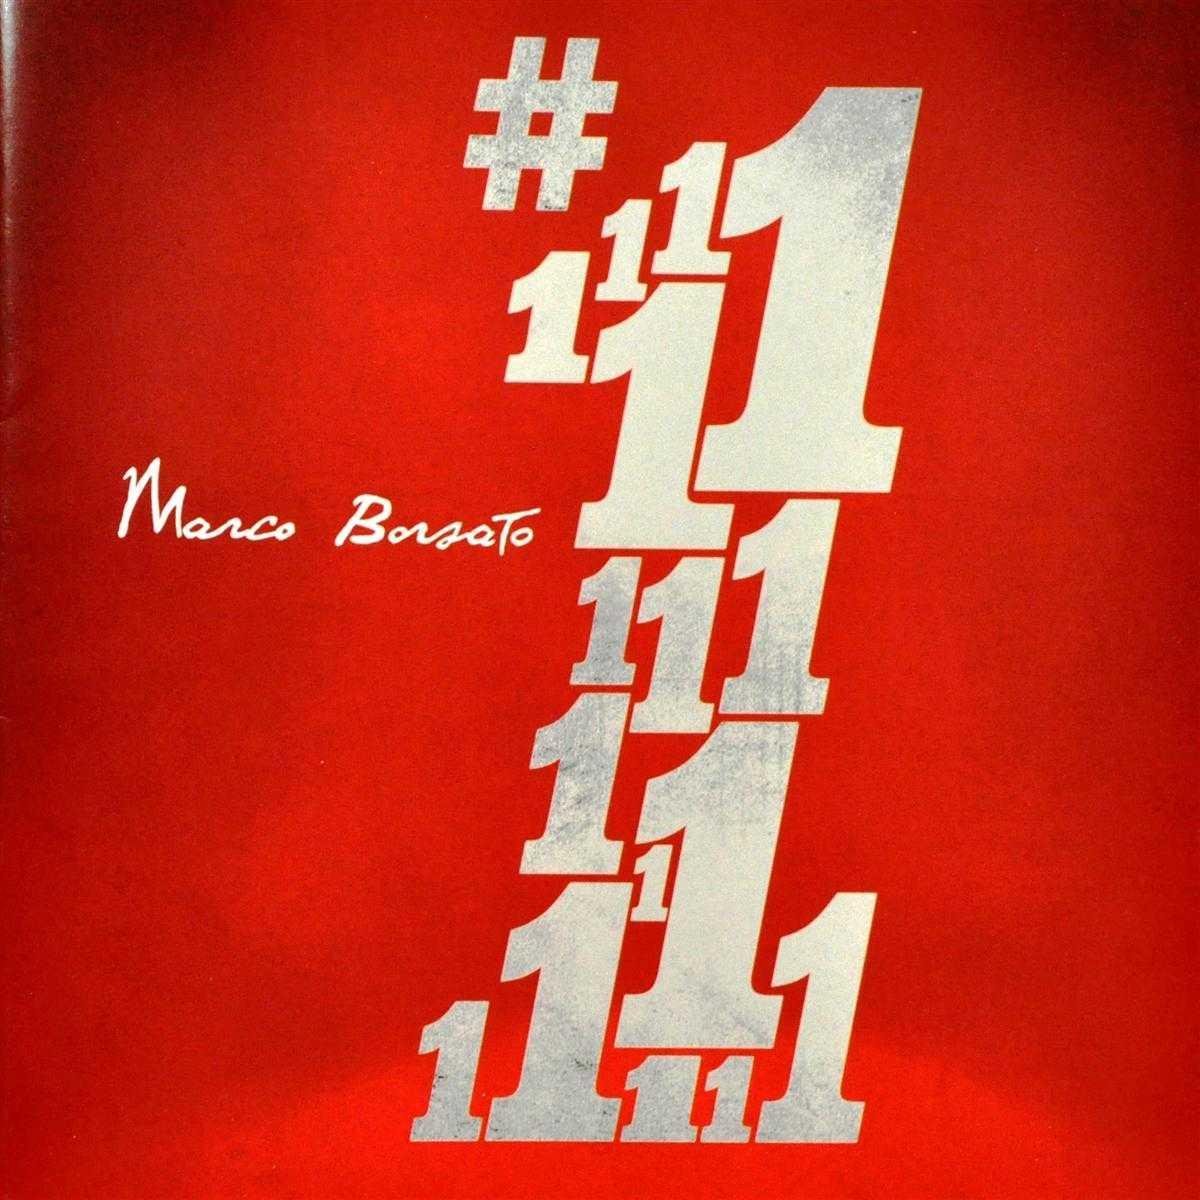 bol.com | No. 1, Marco Borsato | CD (album) | Muziek